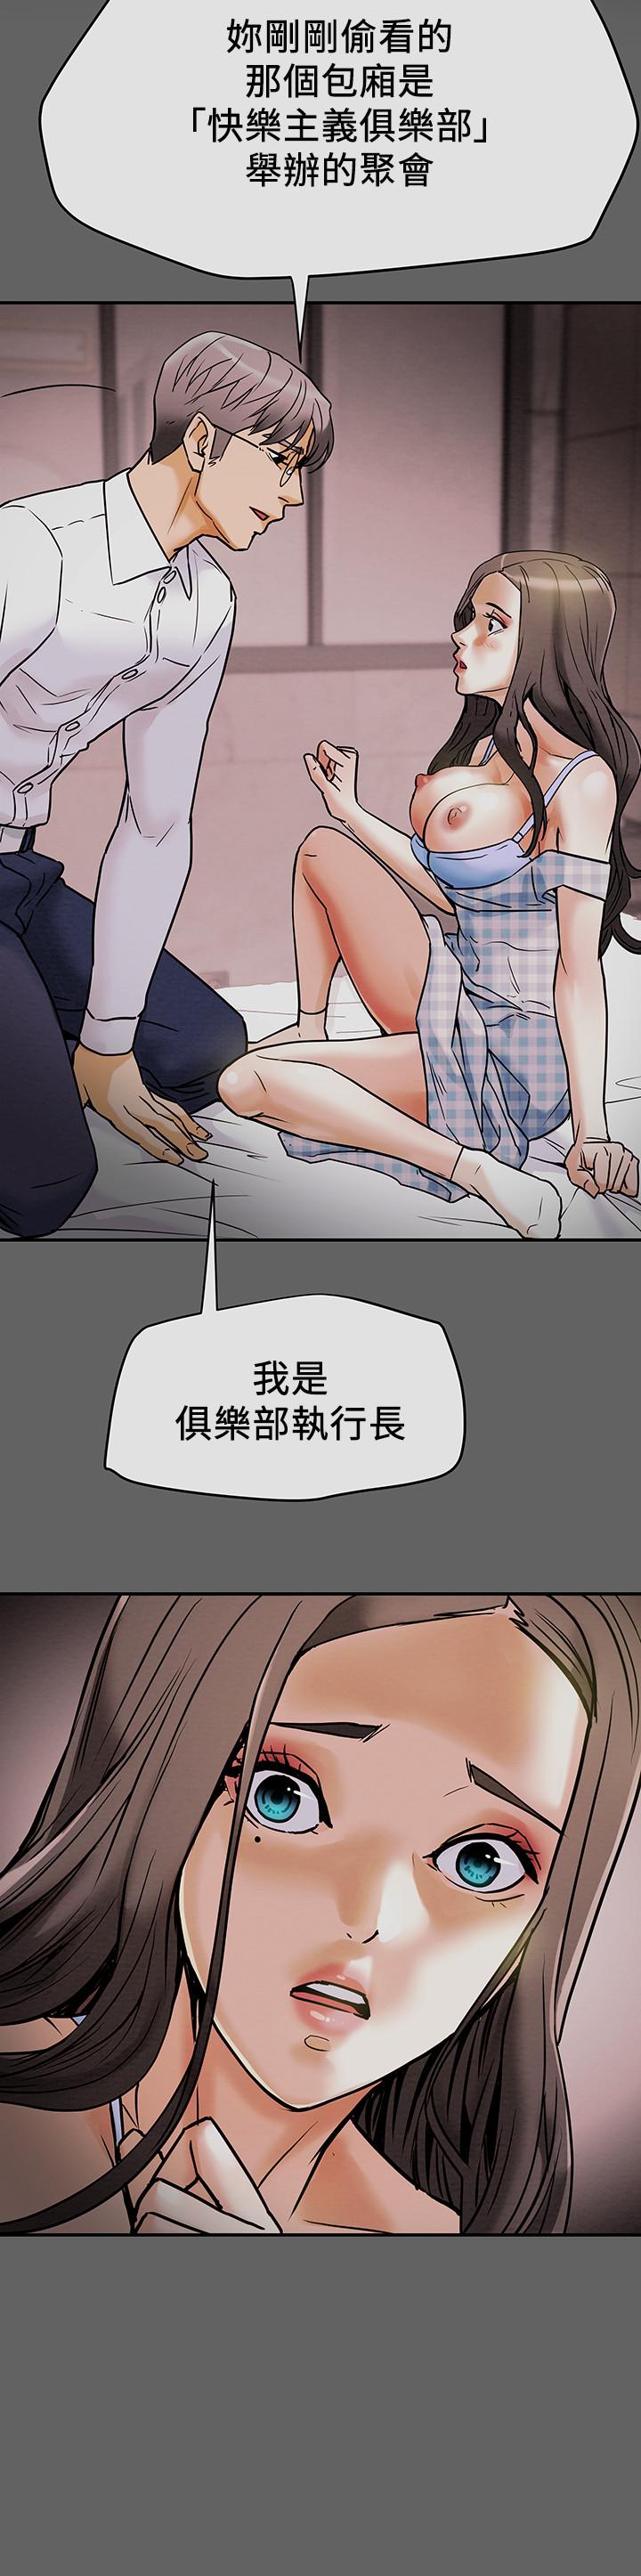 韩国污漫画 純情女攻略計劃 第5话-临停路边的刺激车震 2